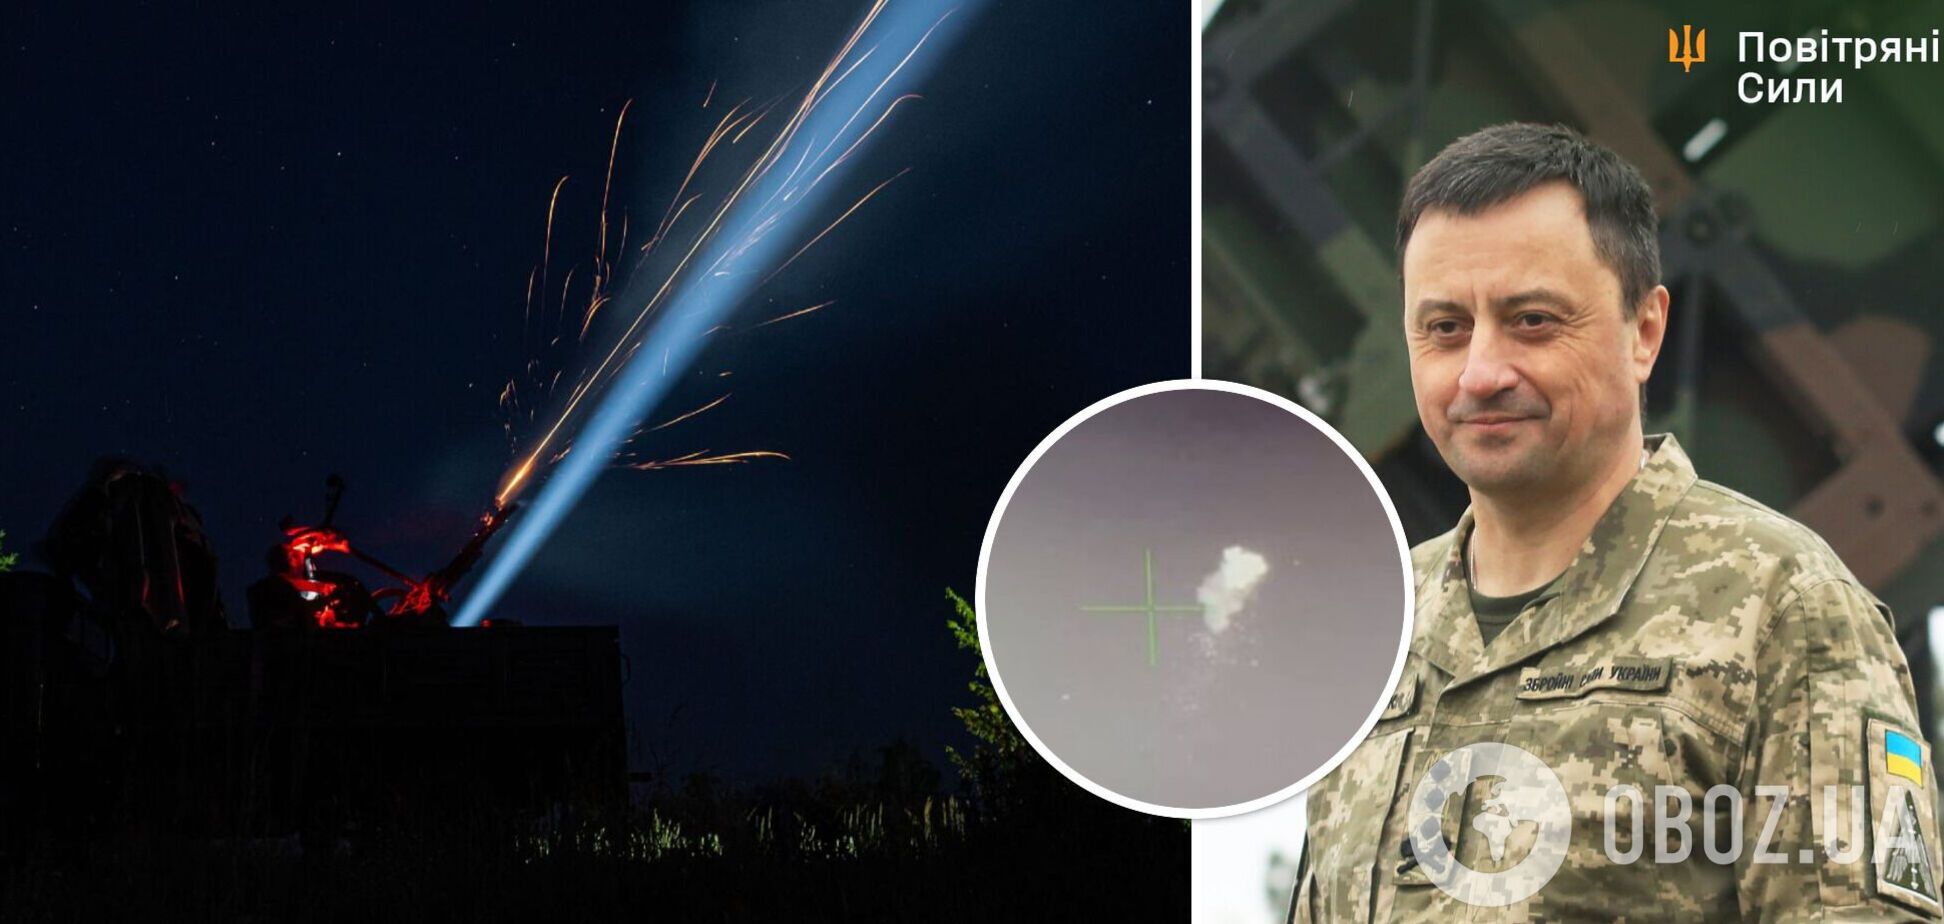 Олещук показал, как силы ПВО уничтожали российские дроны в небе над Украиной в ночь на 3 октября. Видео